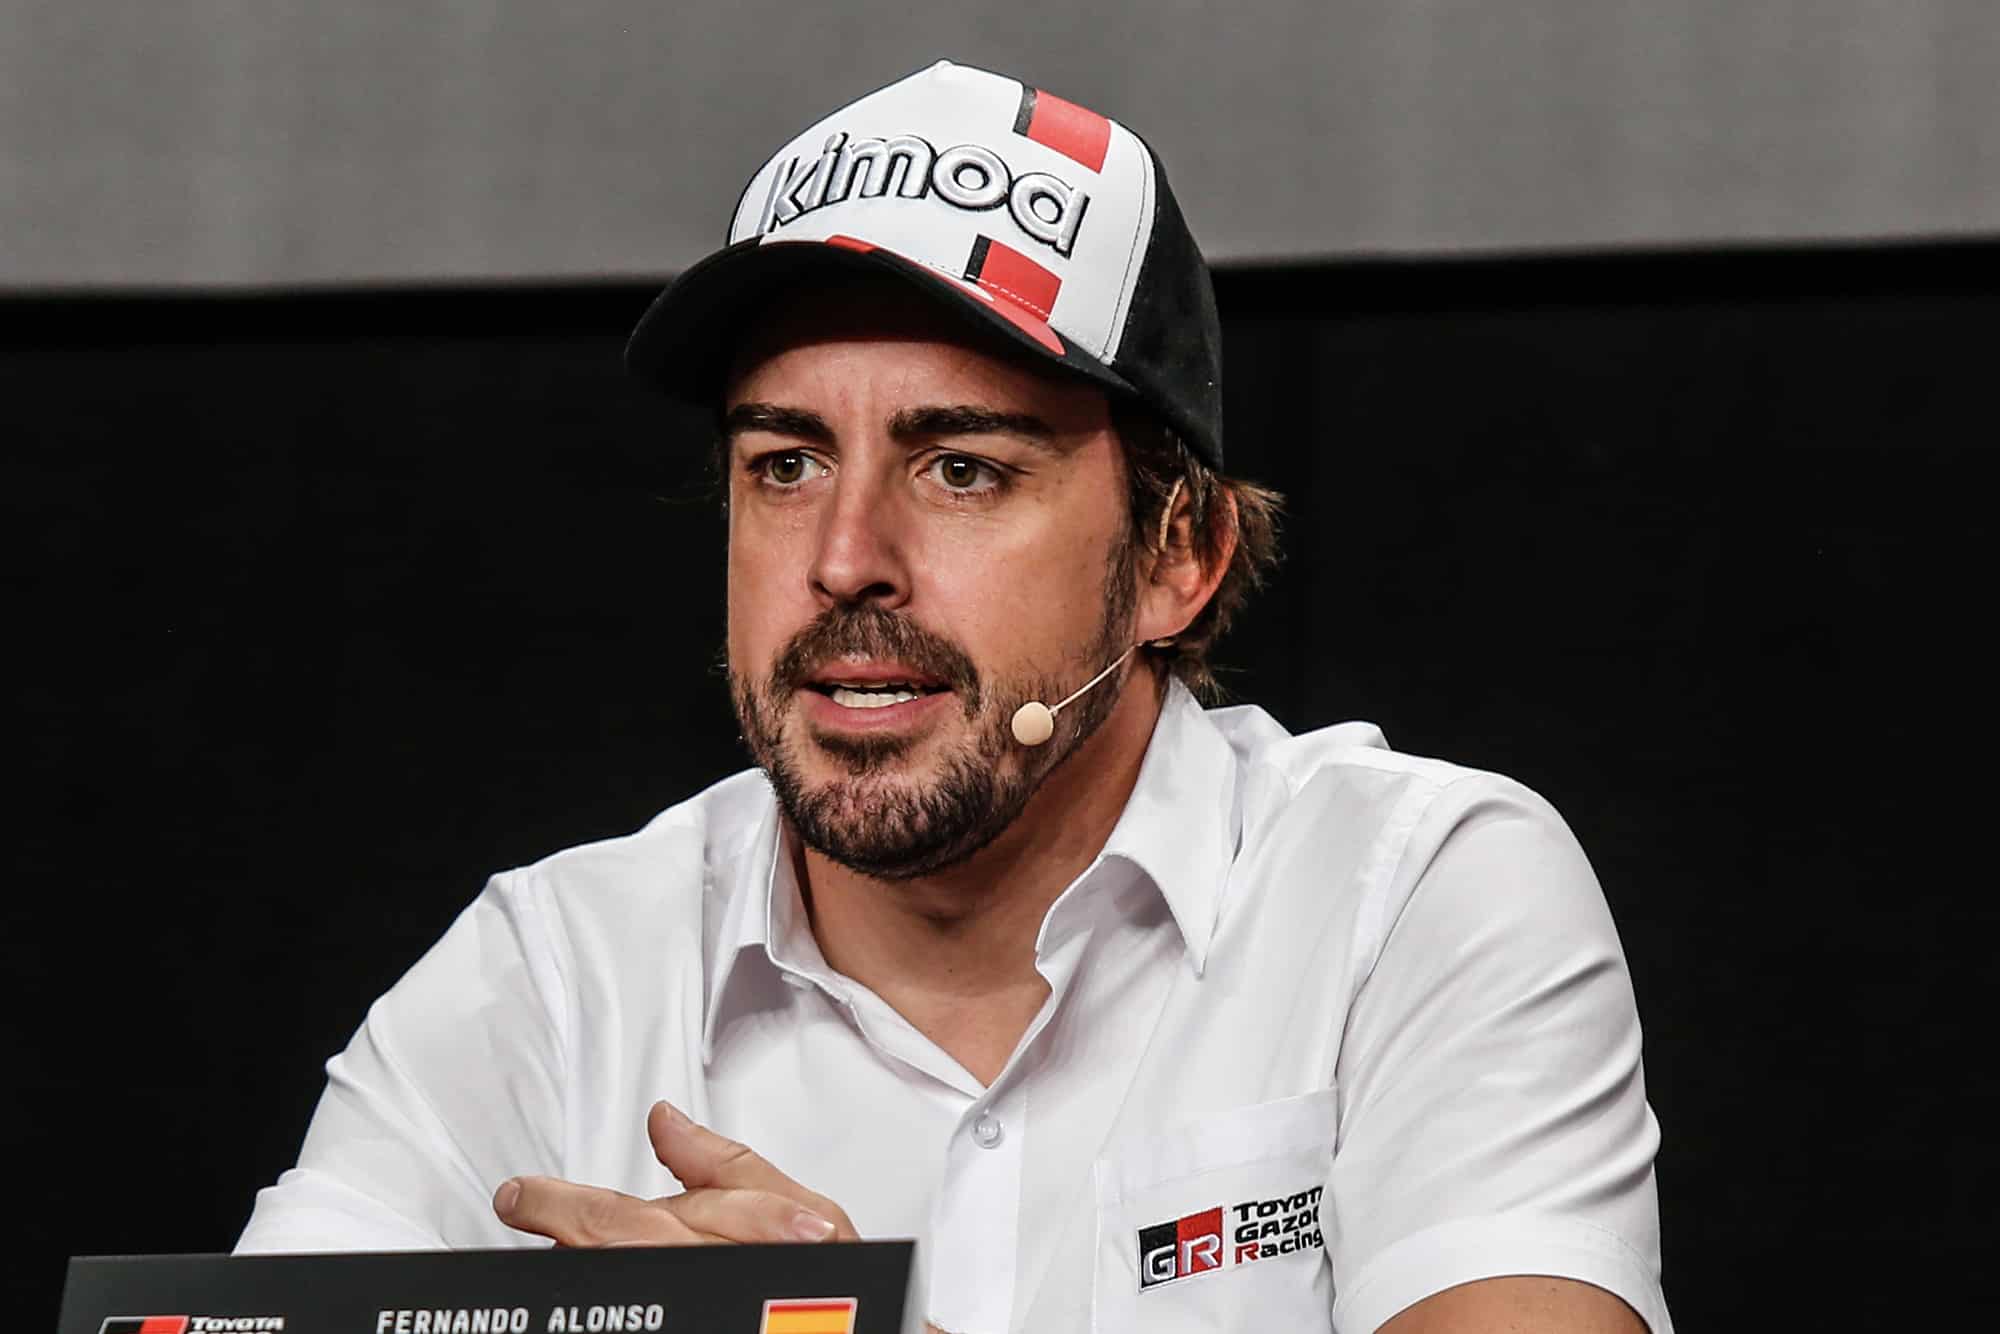 Fernando Alonso announces his entry to the 2020 Dakar rally